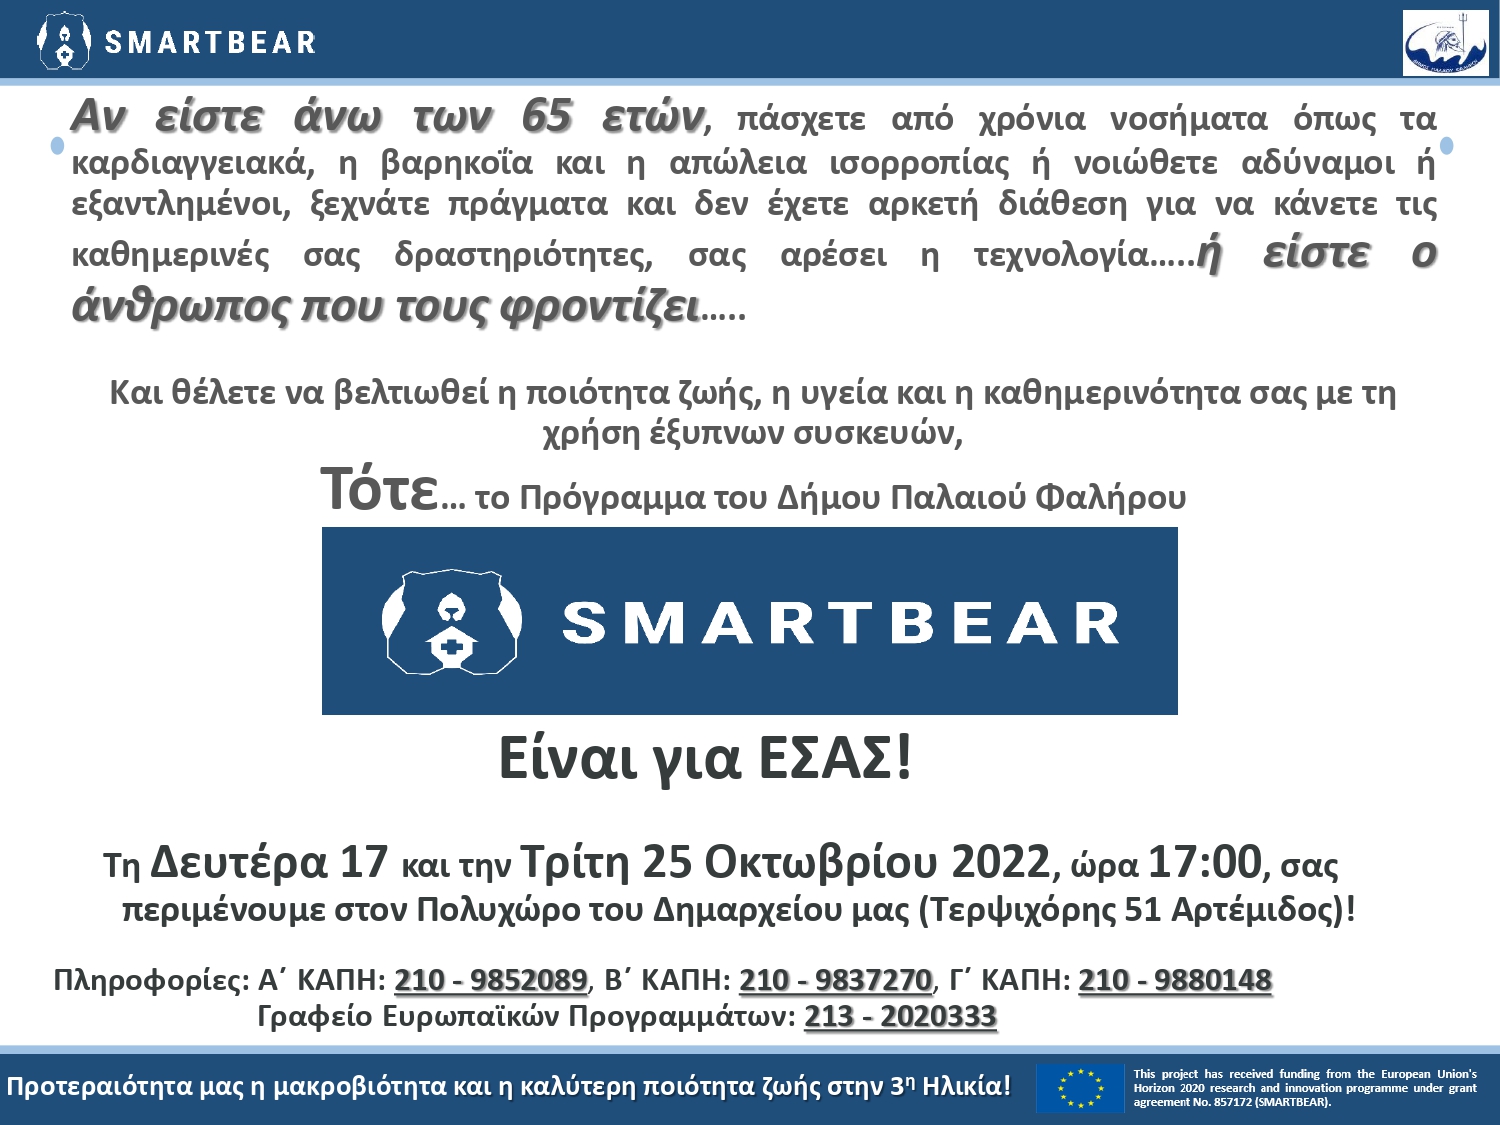 Πρόσκληση για Εκδηλώσεις Smart Bear (2)_pages-to-jpg-0001